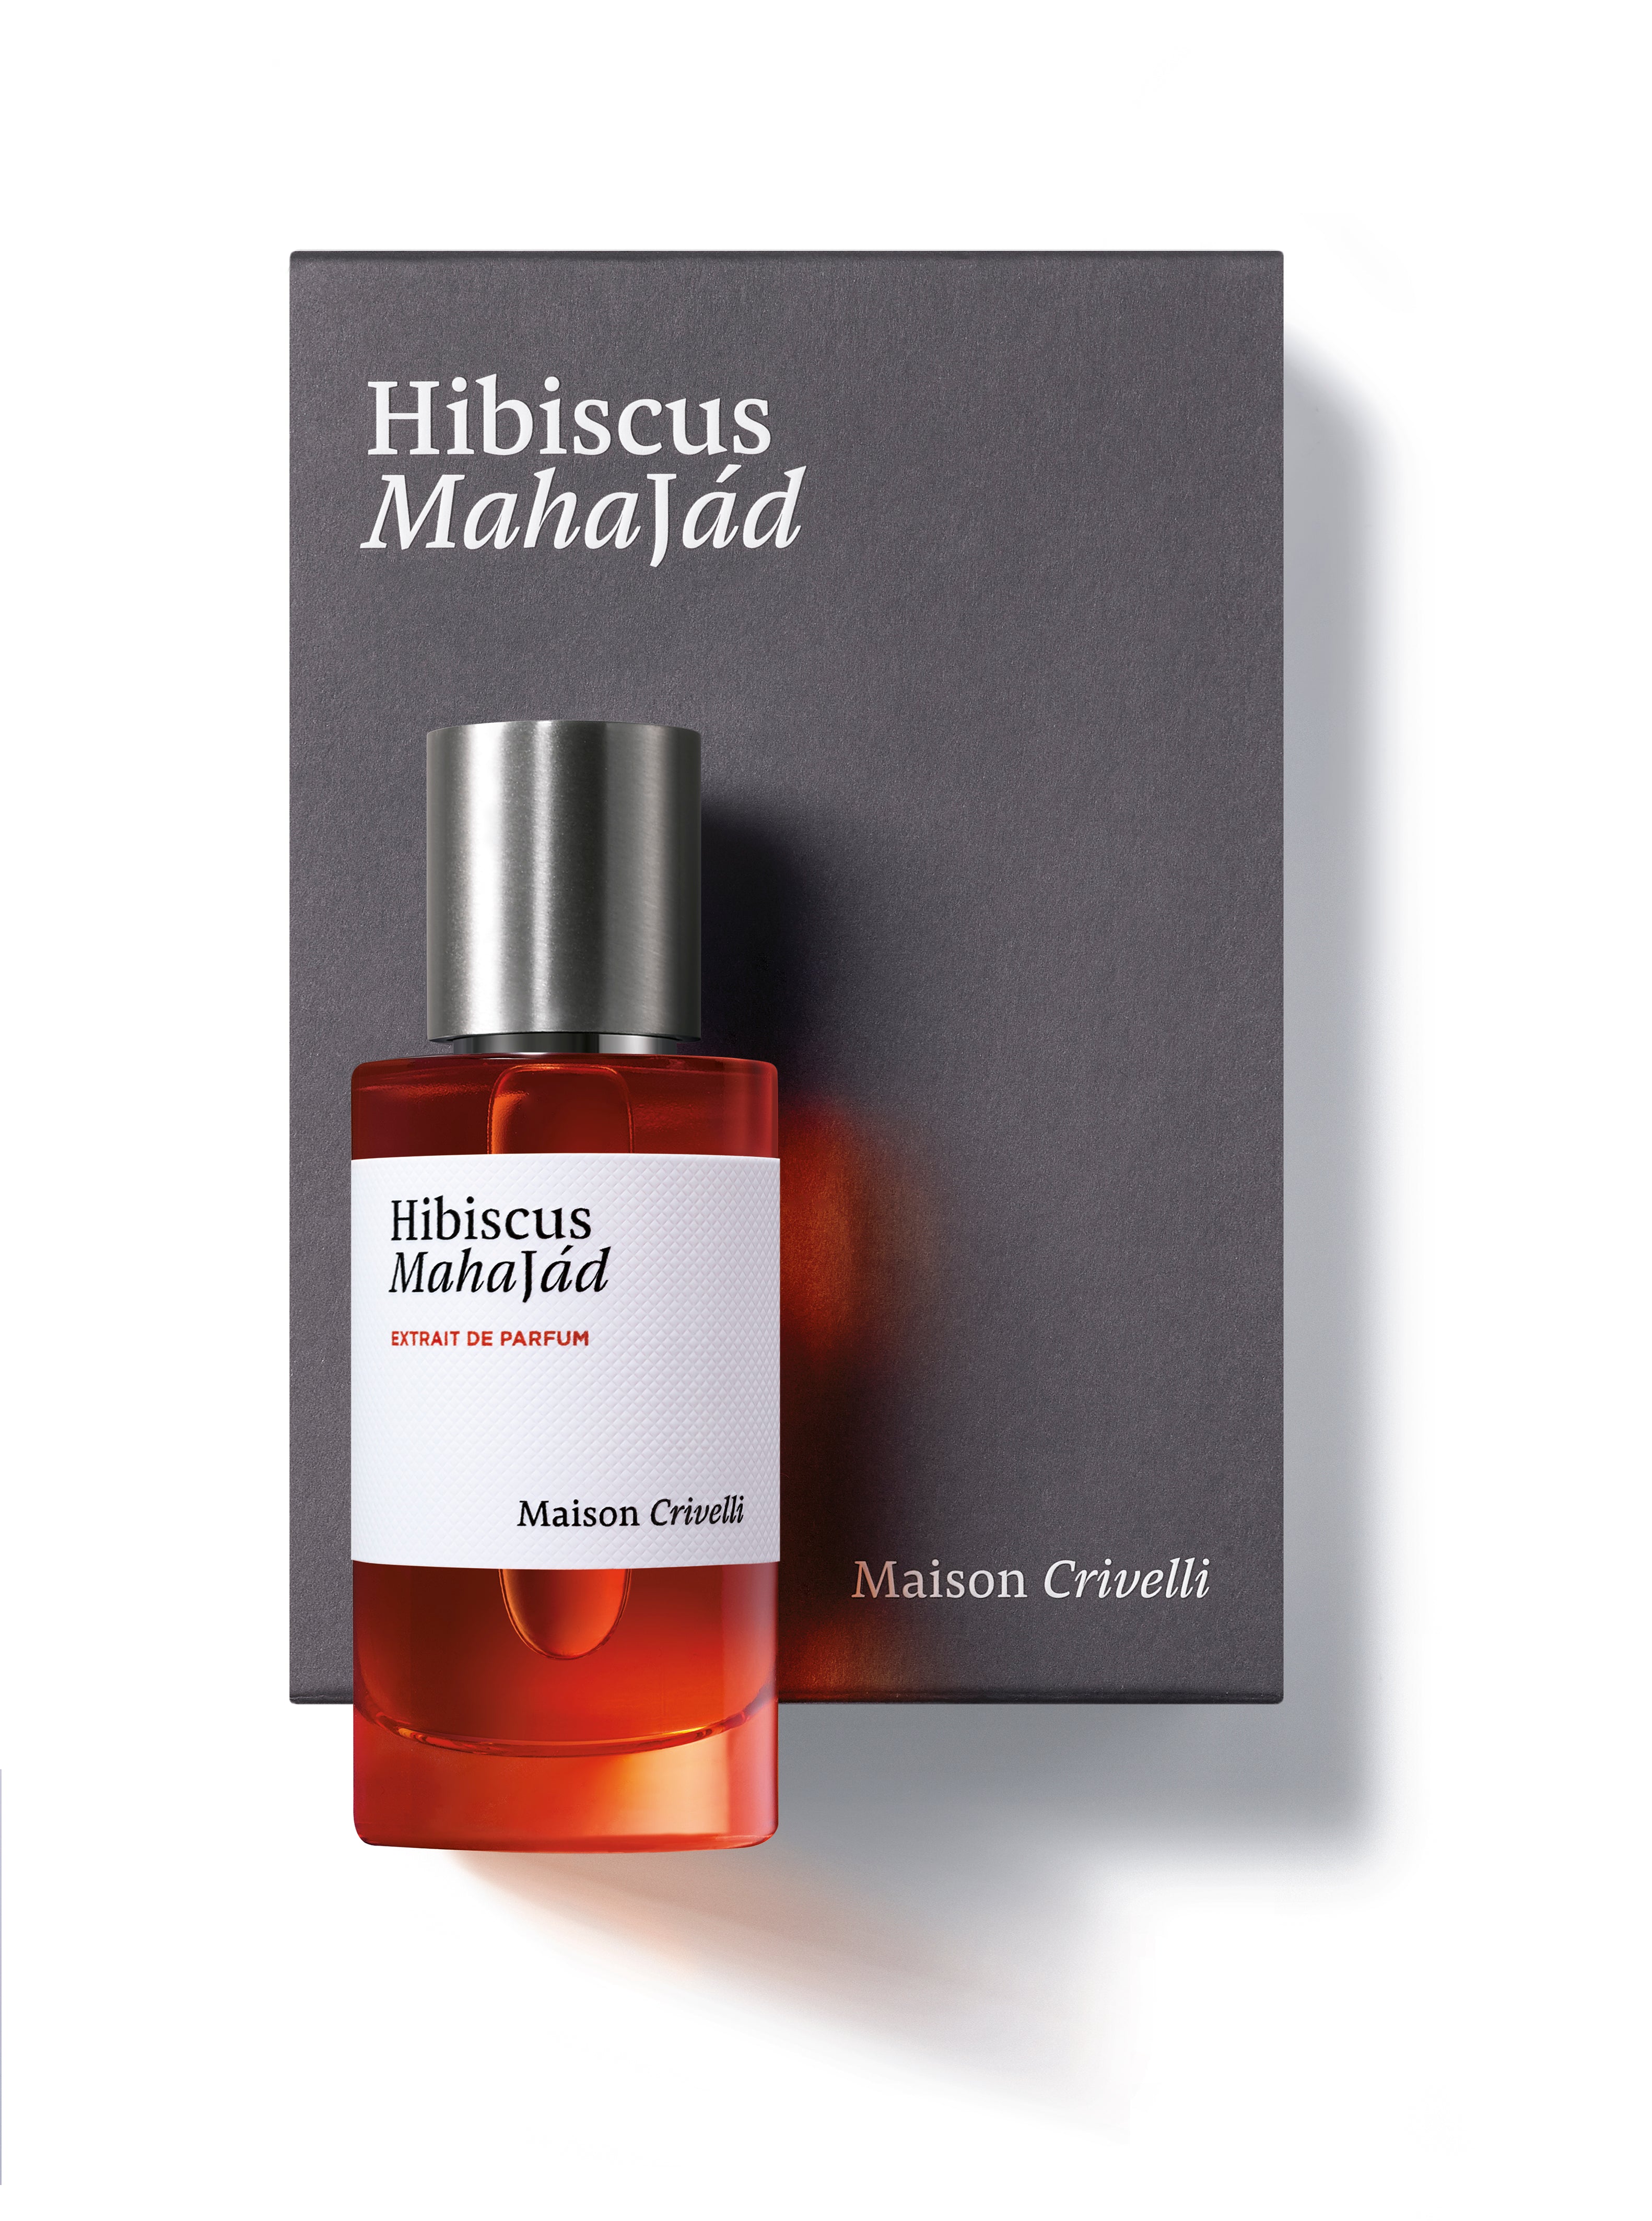 Hibiscus Mahajad-Extrait de parfum